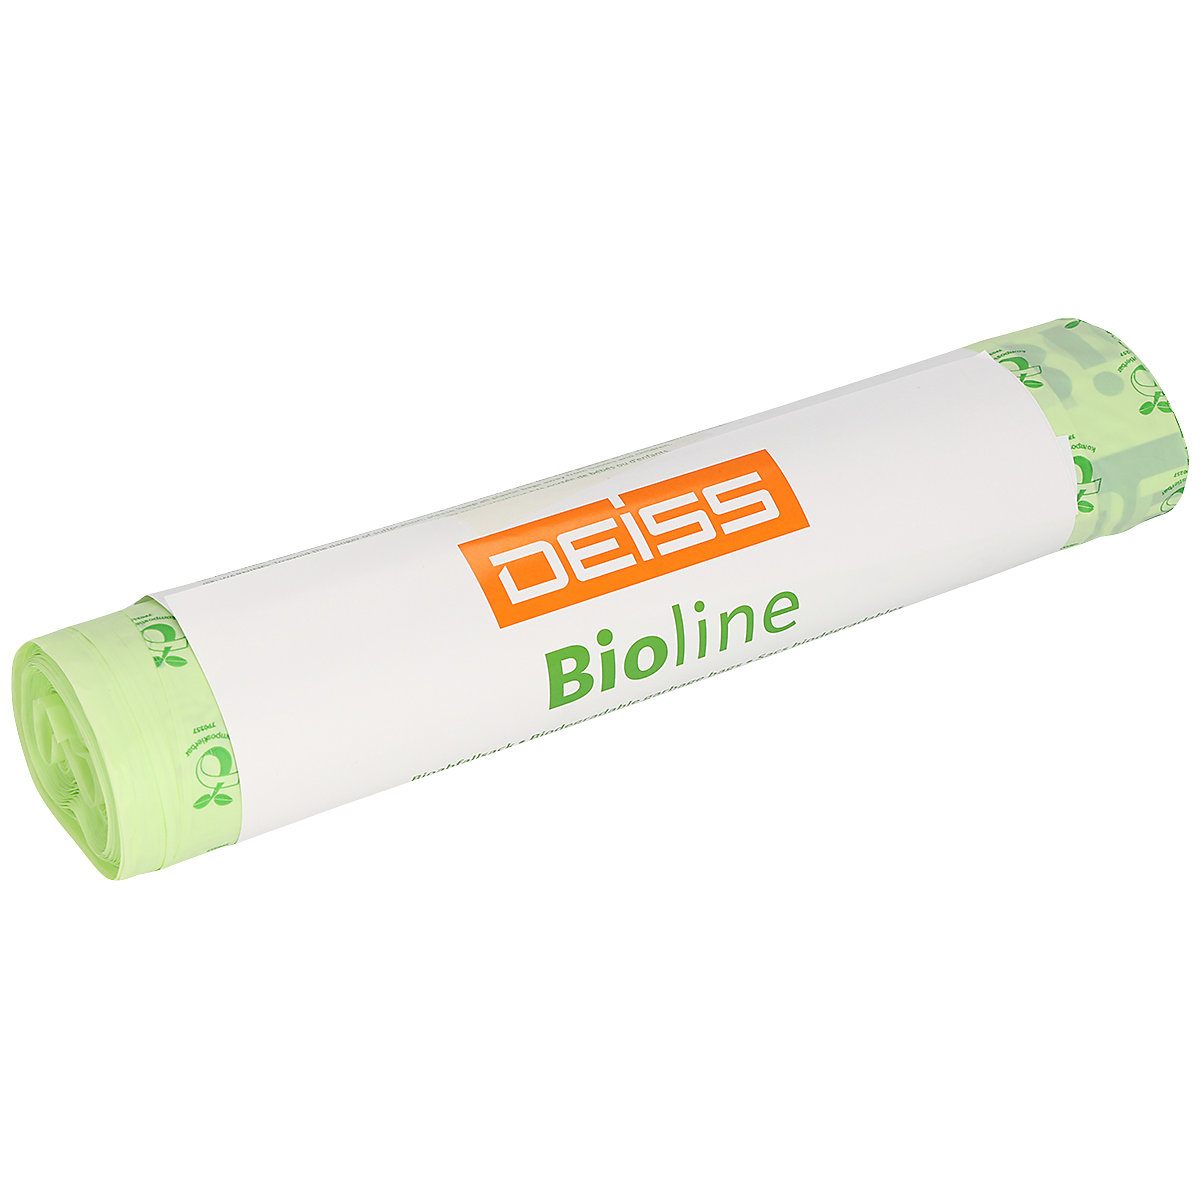 ecovio® bioline waste sacks - Deiss